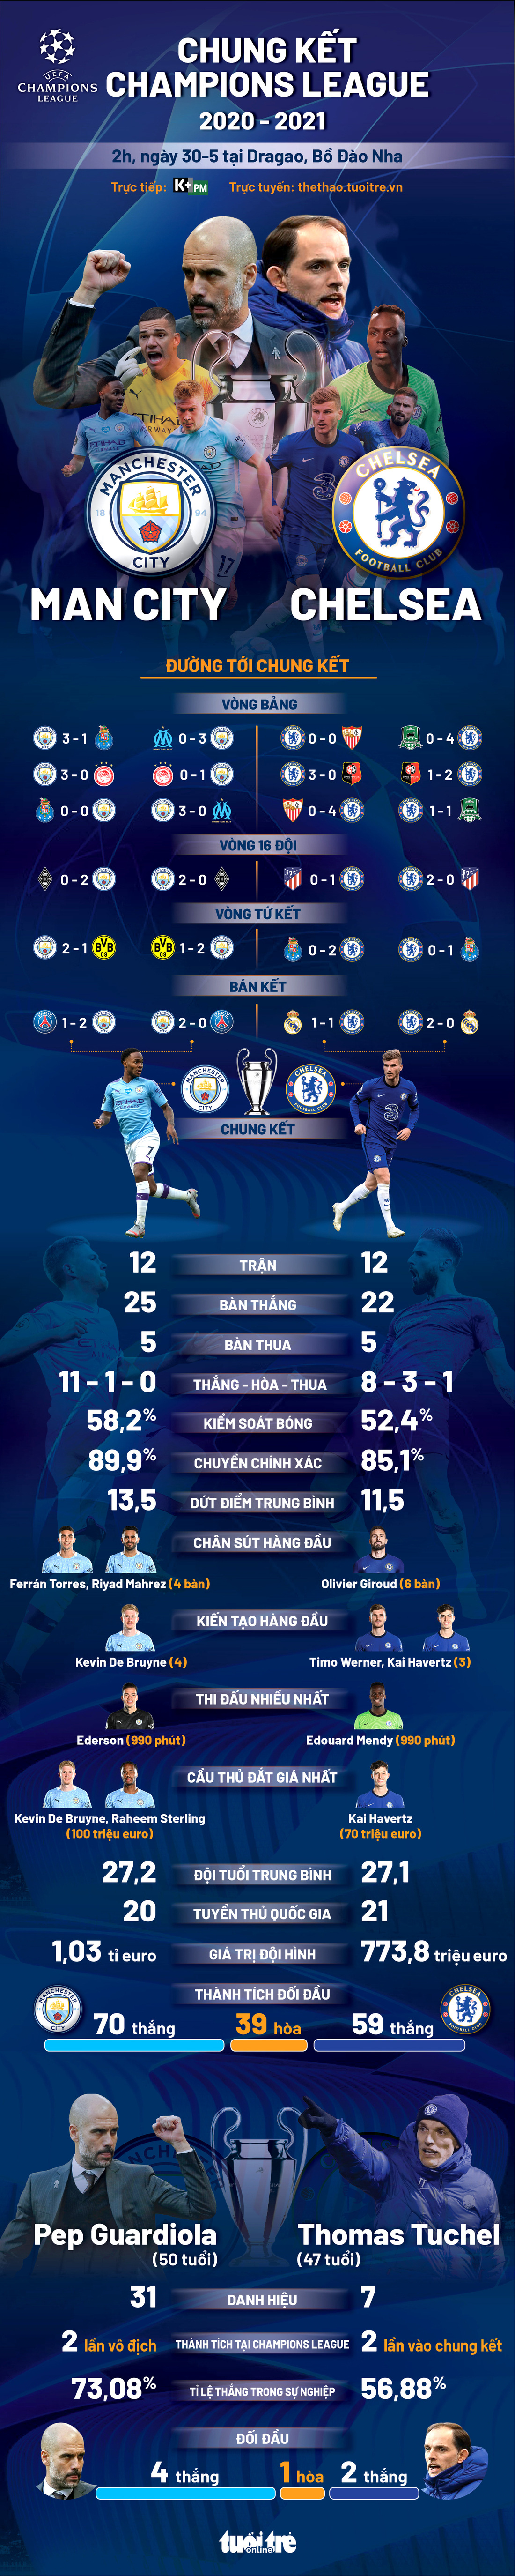 Tương quan sức mạnh giữa Man City và Chelsea ở chung kết Champions League - Ảnh 1.